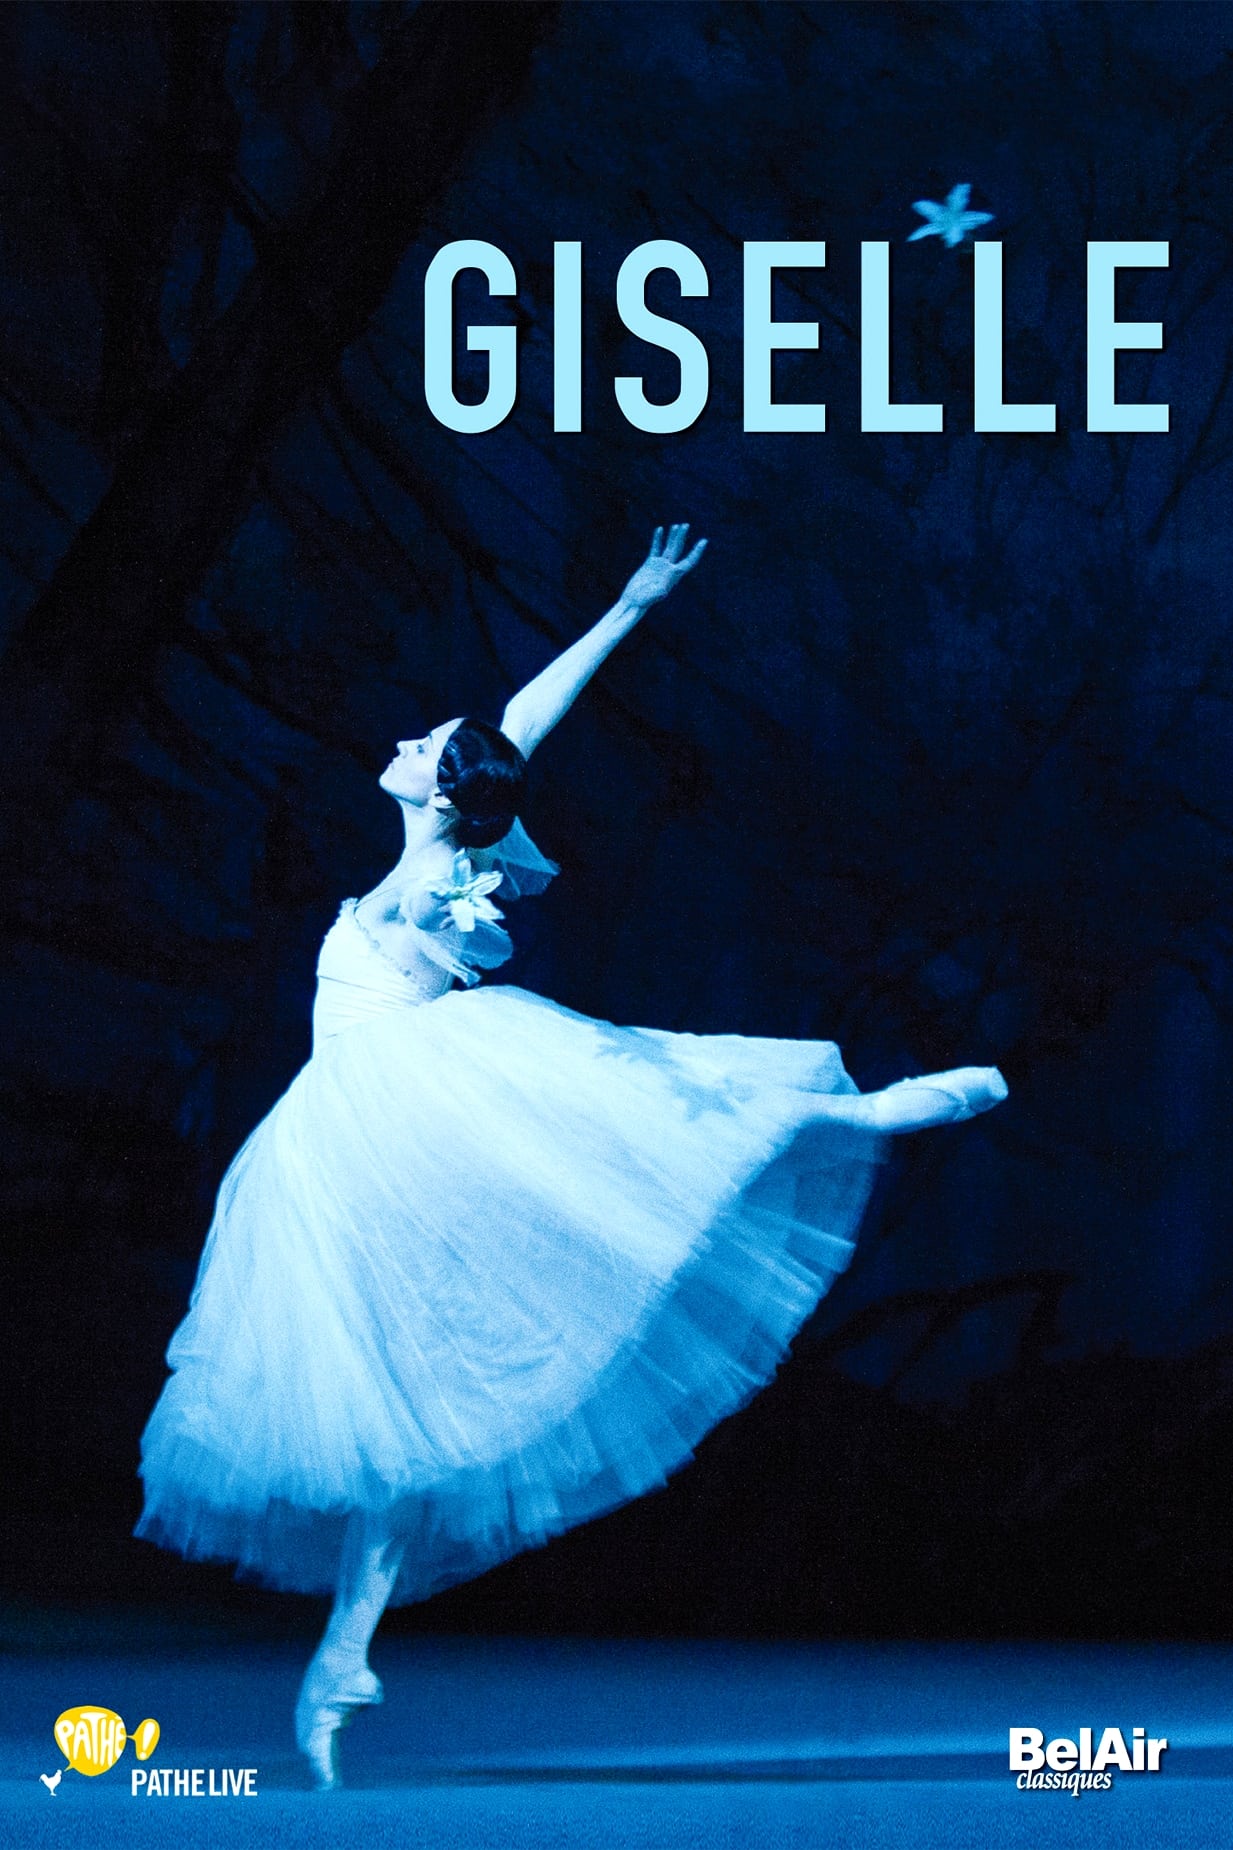 Giselle (Bolshoi Ballet)